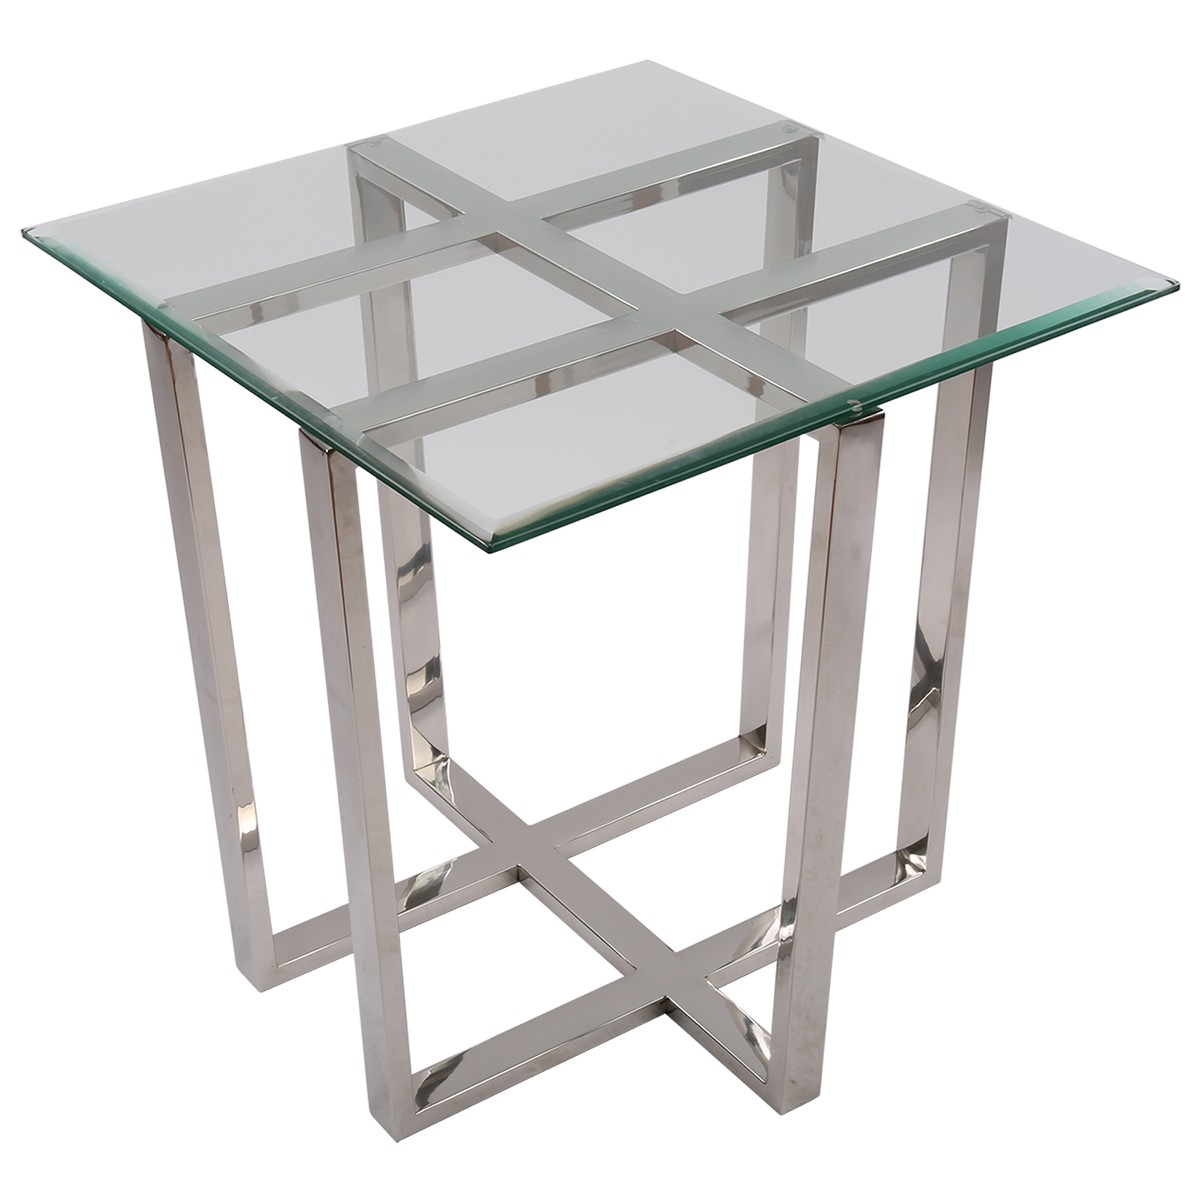 Beistelltisch quadratisch Glas-Metall, Tisch Glas verchromt Metall, Höhe 62 cm